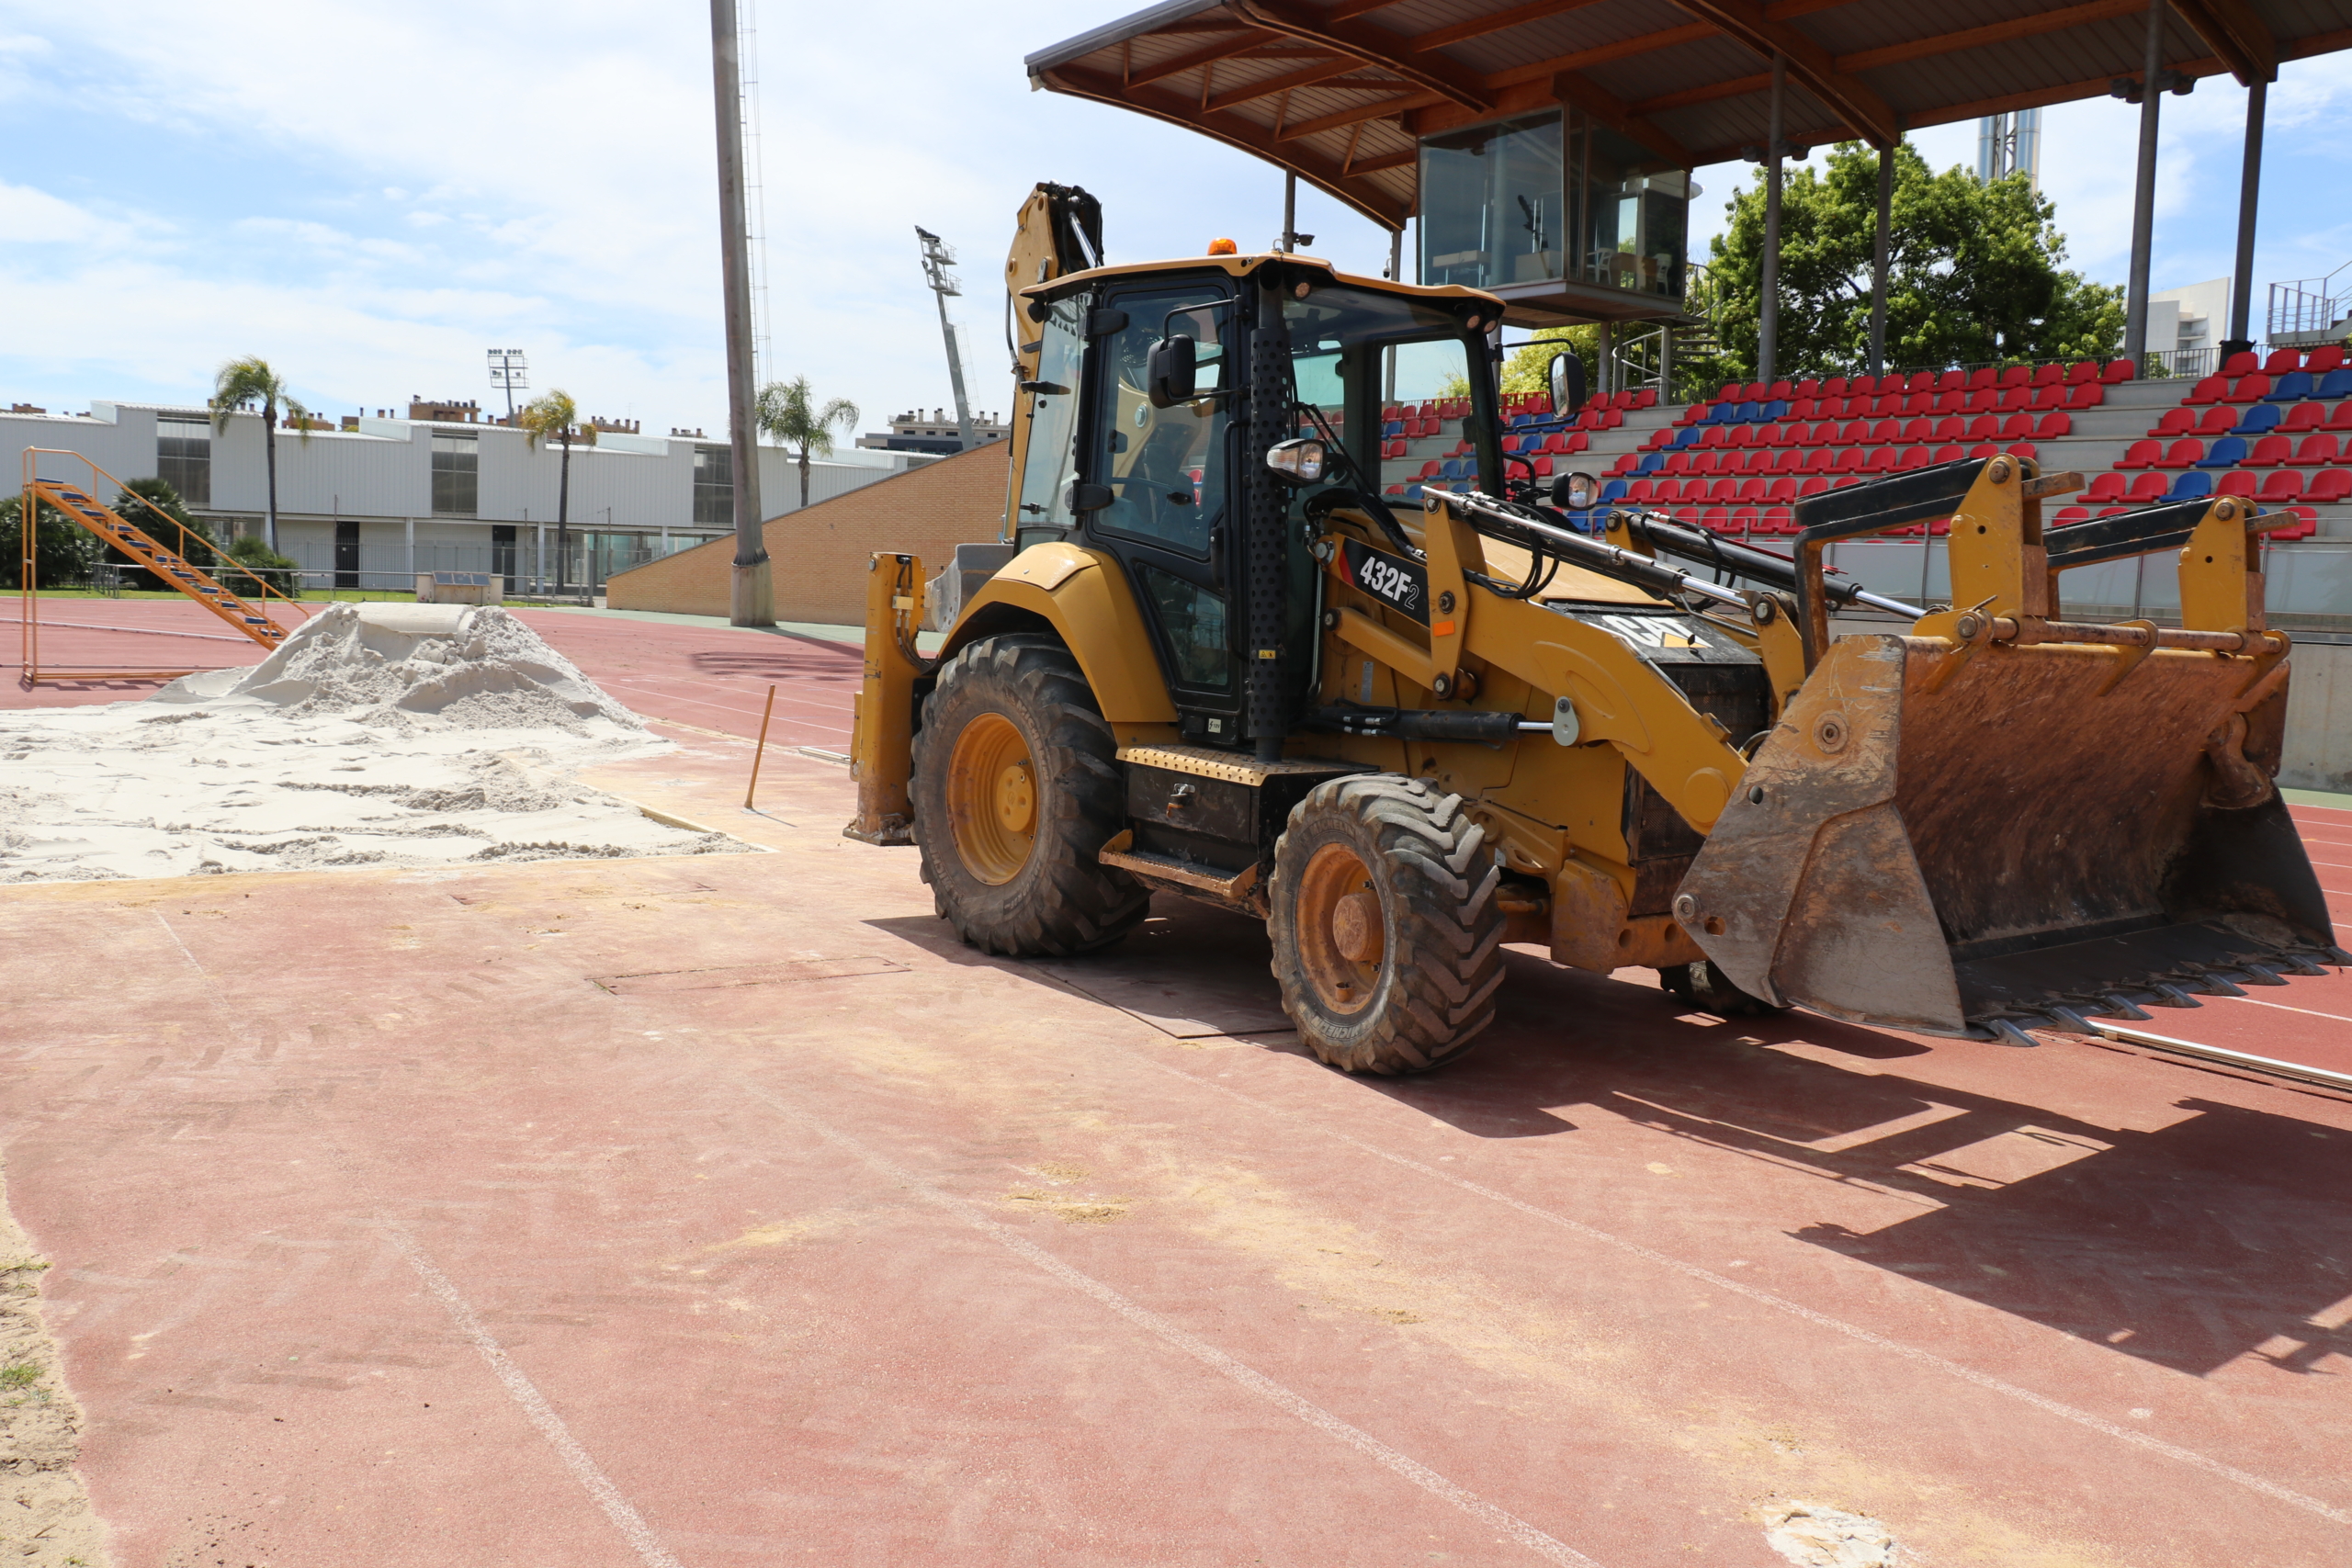 Torrent renueva los fosos de las instalaciones de Parc Central con arena de silice